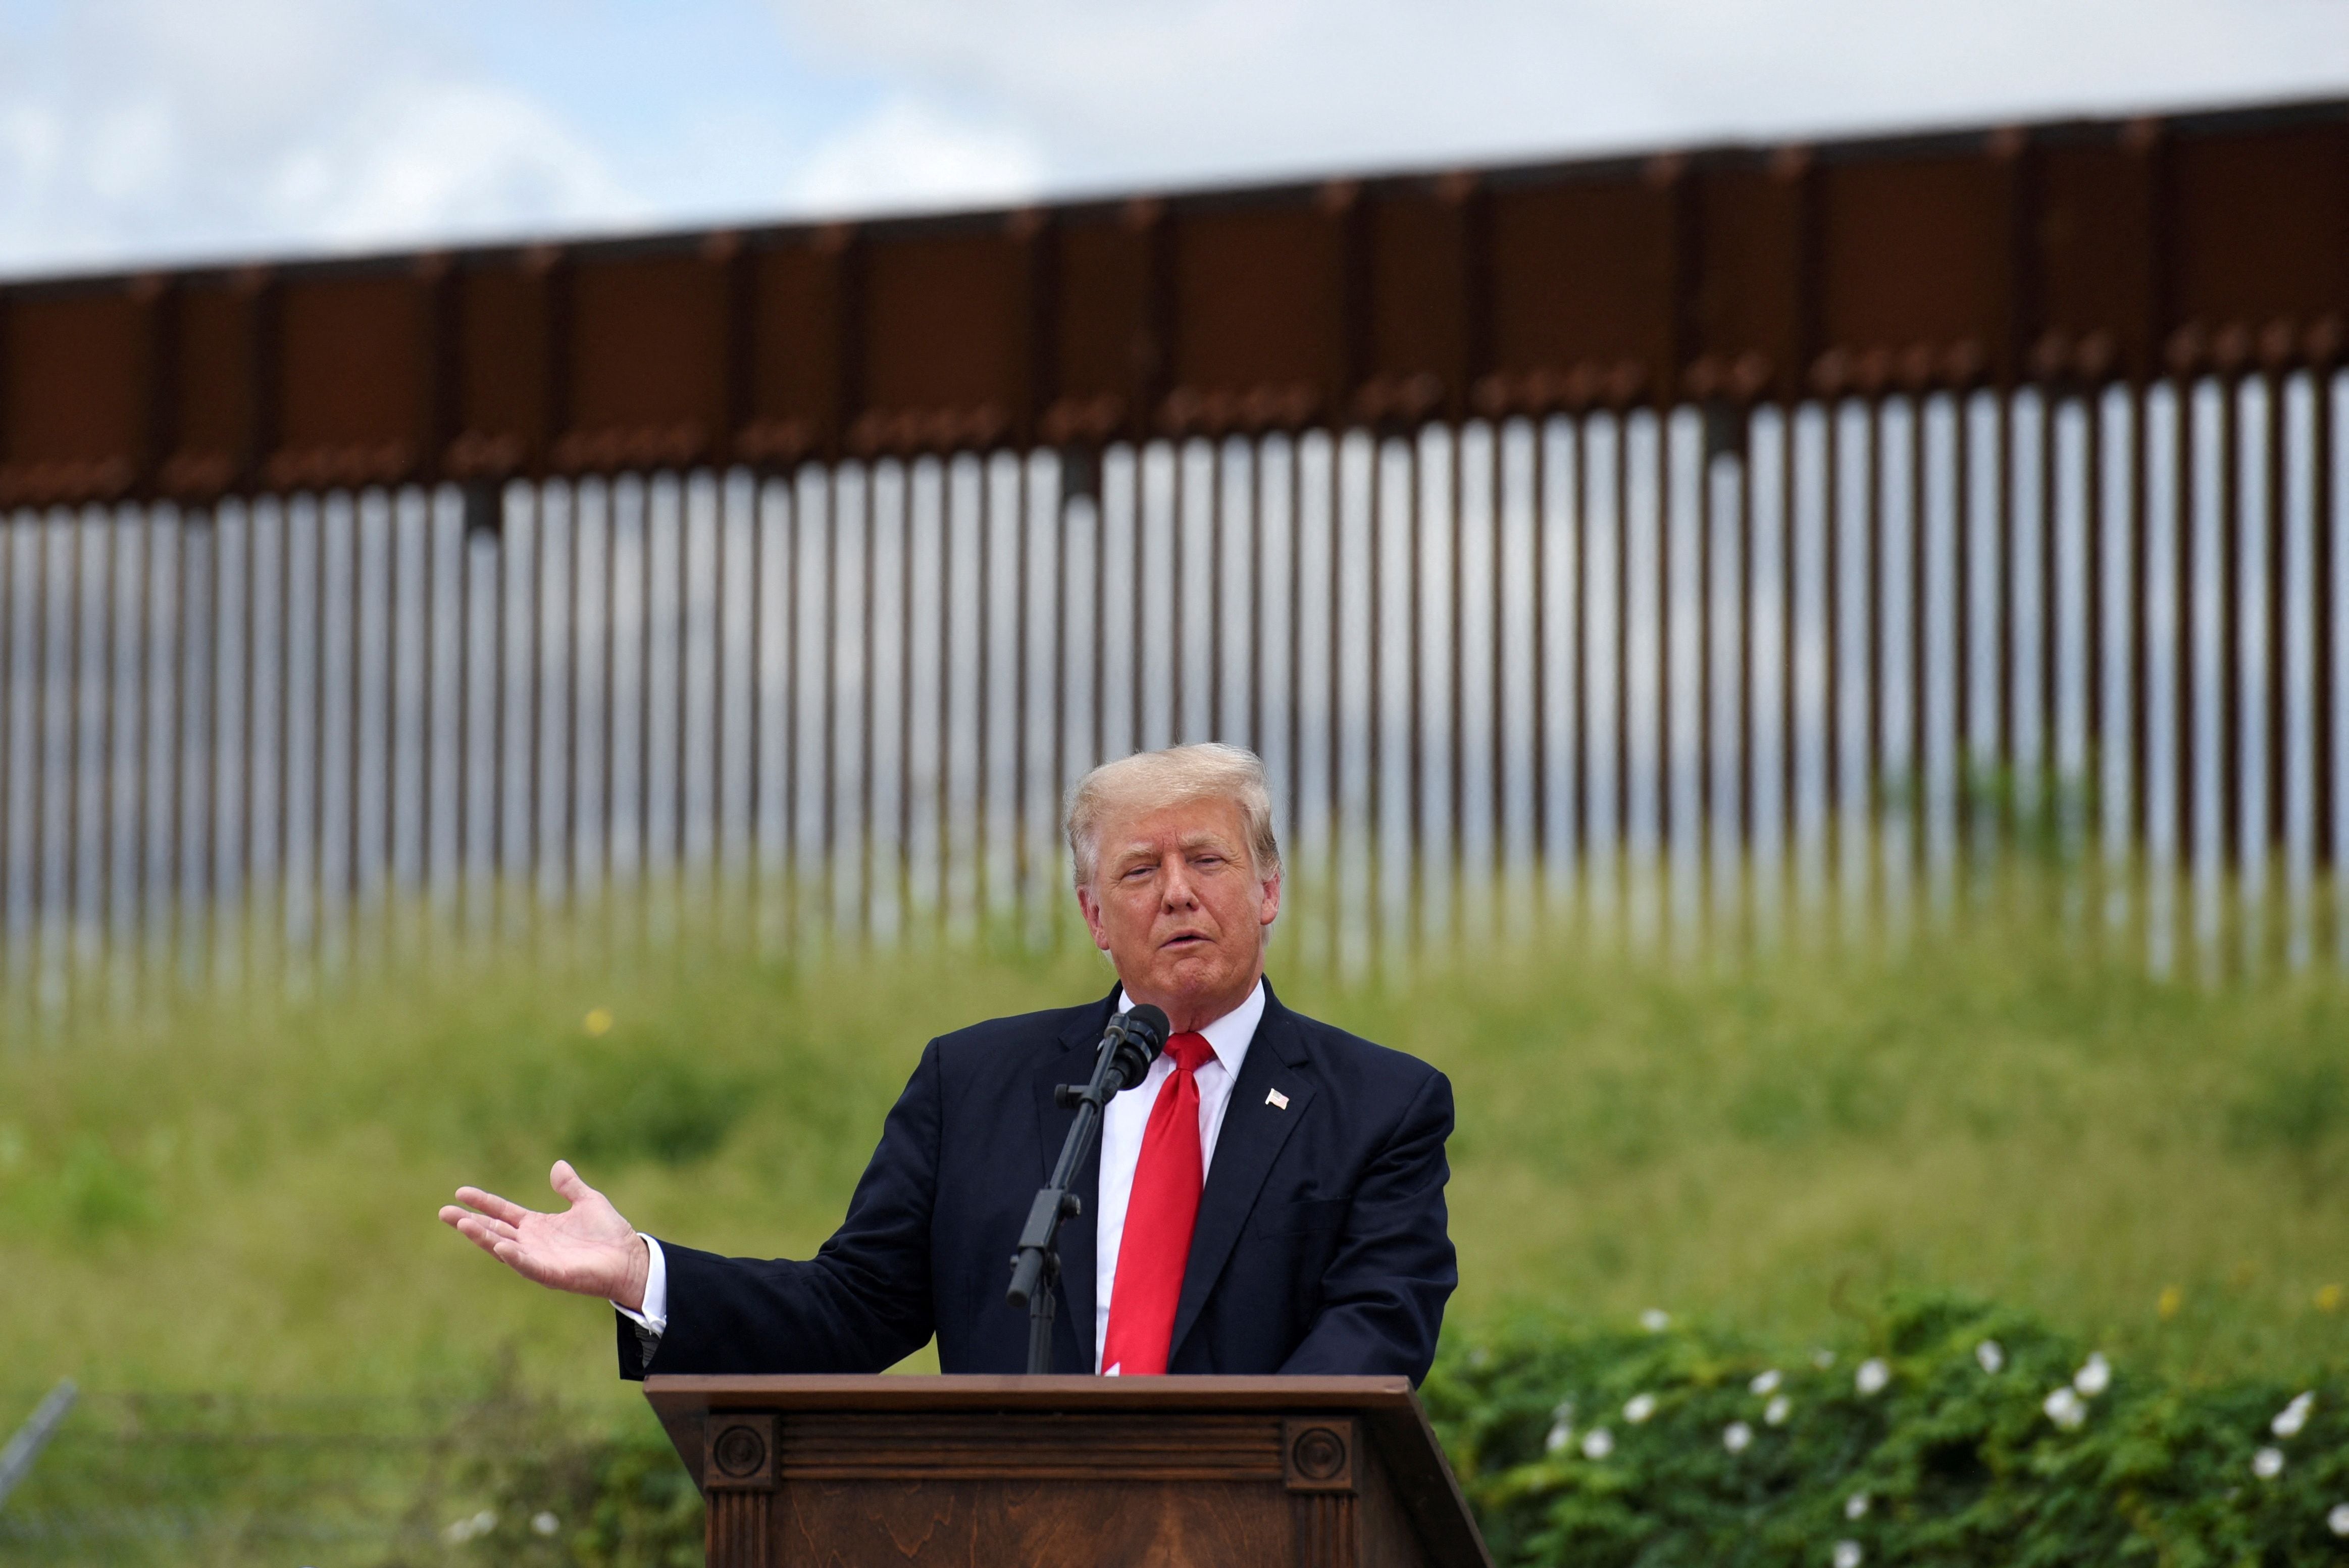 FOTO DE ARCHIVO: ex presidente de EEUU El presidente Donald Trump visita una sección inacabada del muro a lo largo de la frontera entre Estados Unidos y México en Pharr, Texas, el 30 de junio de 2021 (REUTERS/Callaghan O'Hare/File Photo)